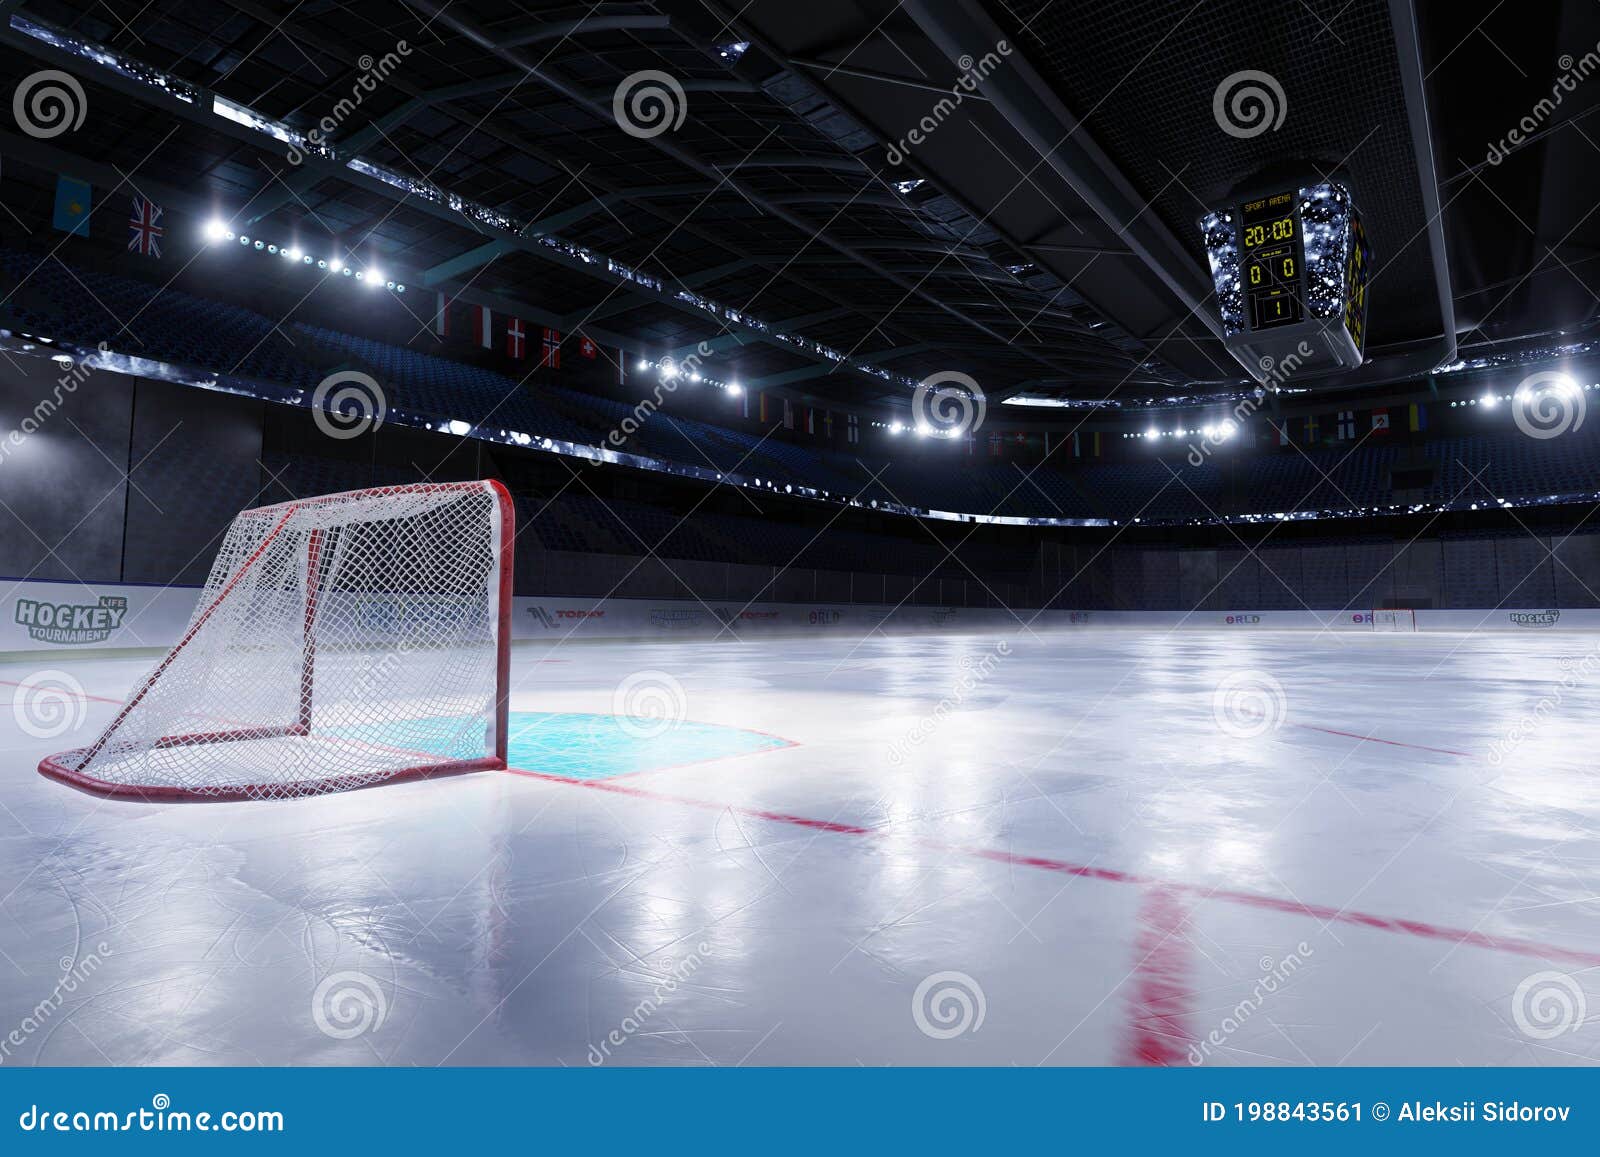 empty hockey arena in 3d render.